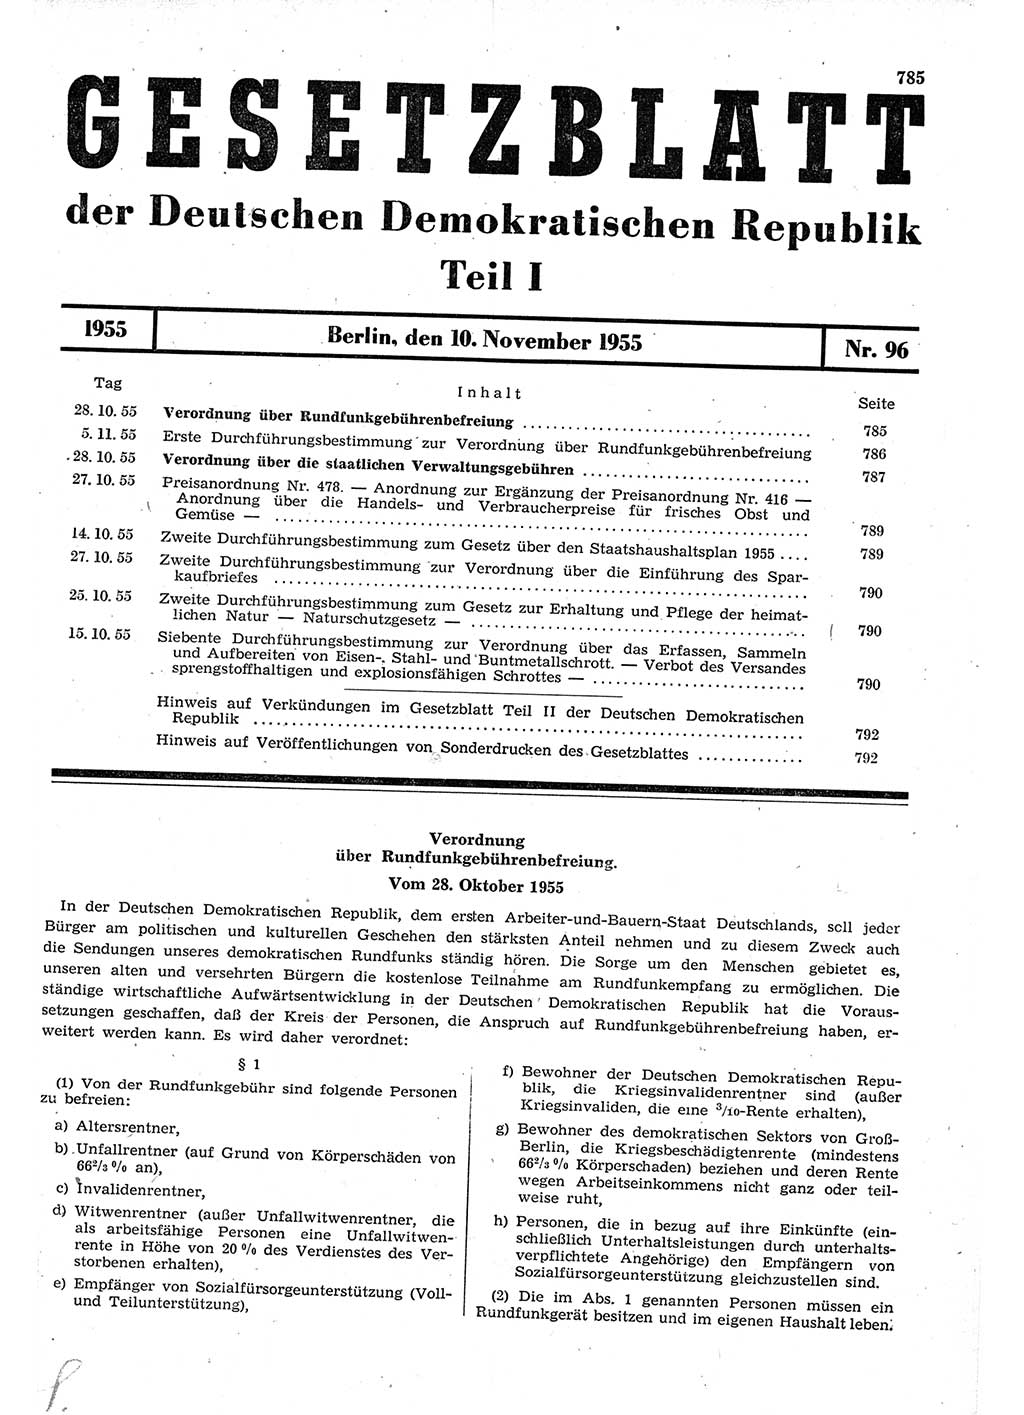 Gesetzblatt (GBl.) der Deutschen Demokratischen Republik (DDR) Teil Ⅰ 1955, Seite 785 (GBl. DDR Ⅰ 1955, S. 785)